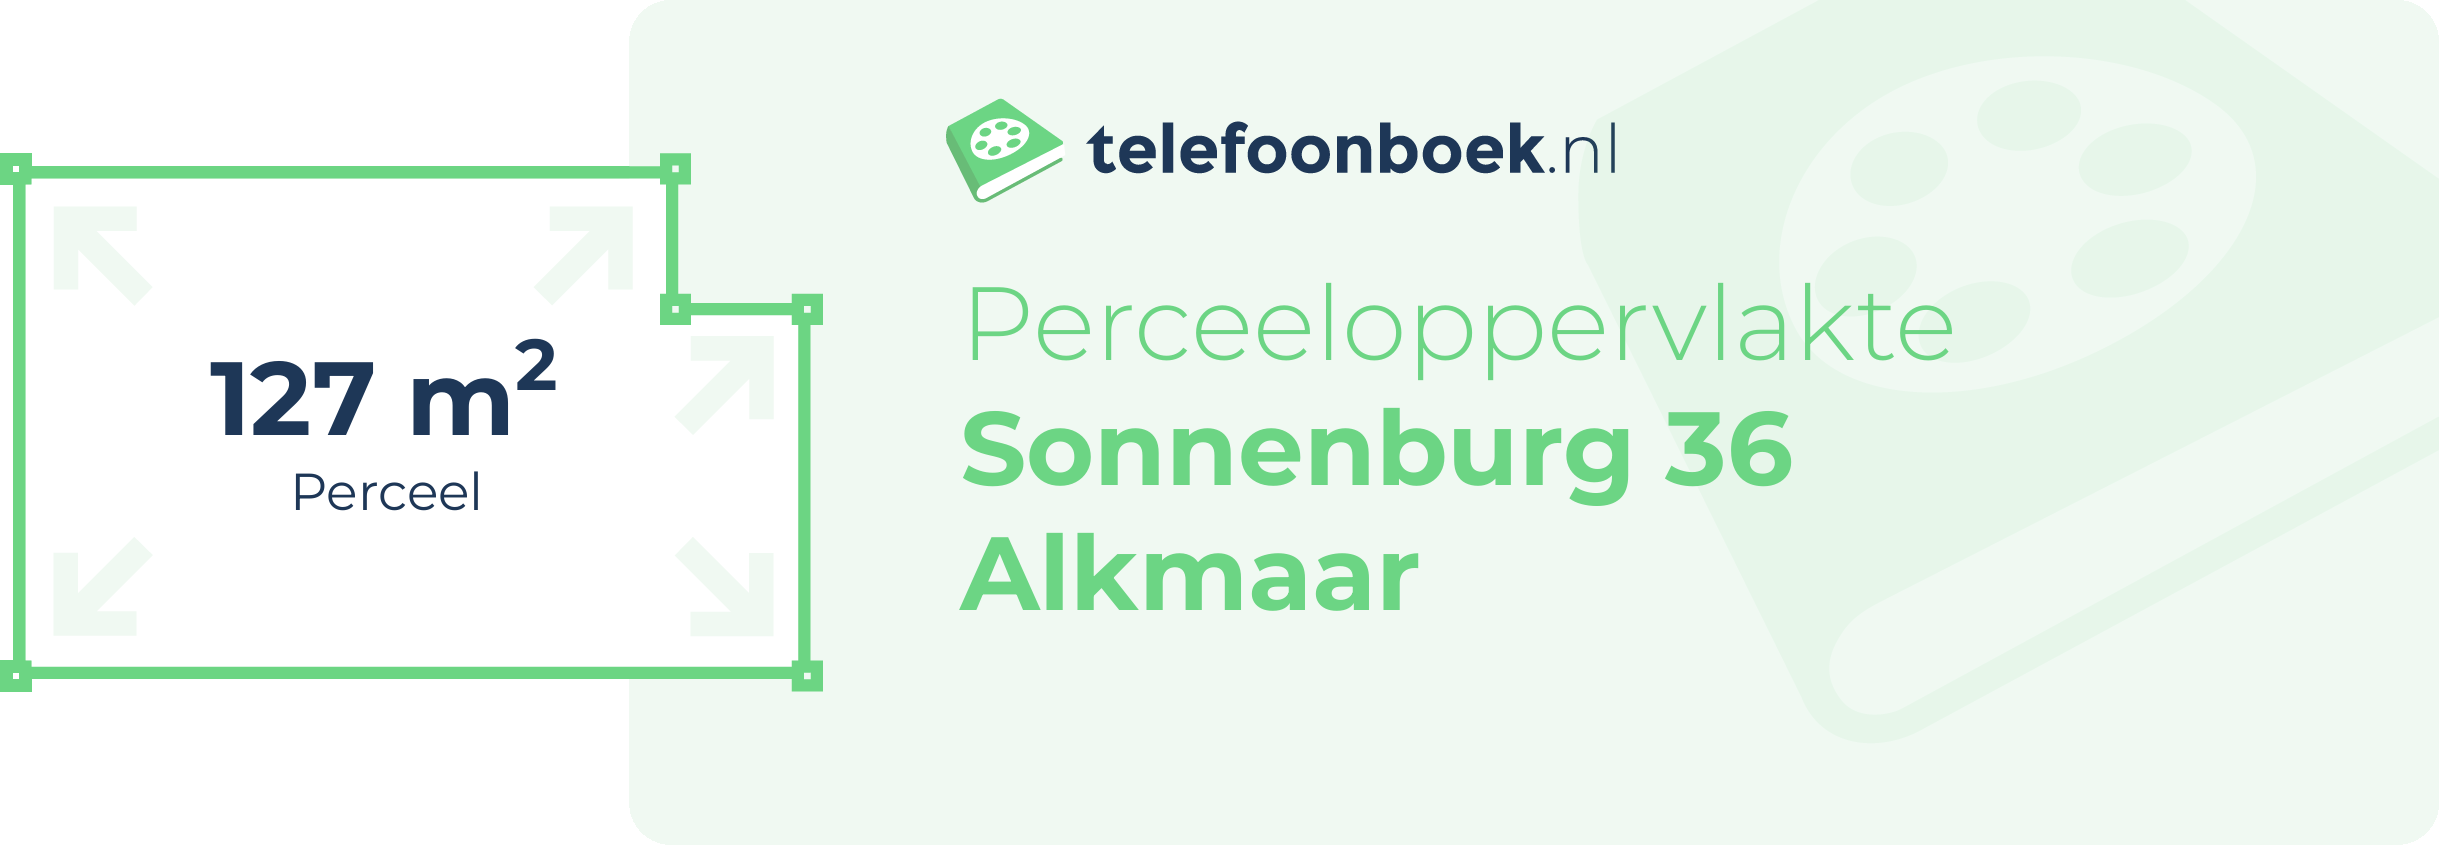 Perceeloppervlakte Sonnenburg 36 Alkmaar